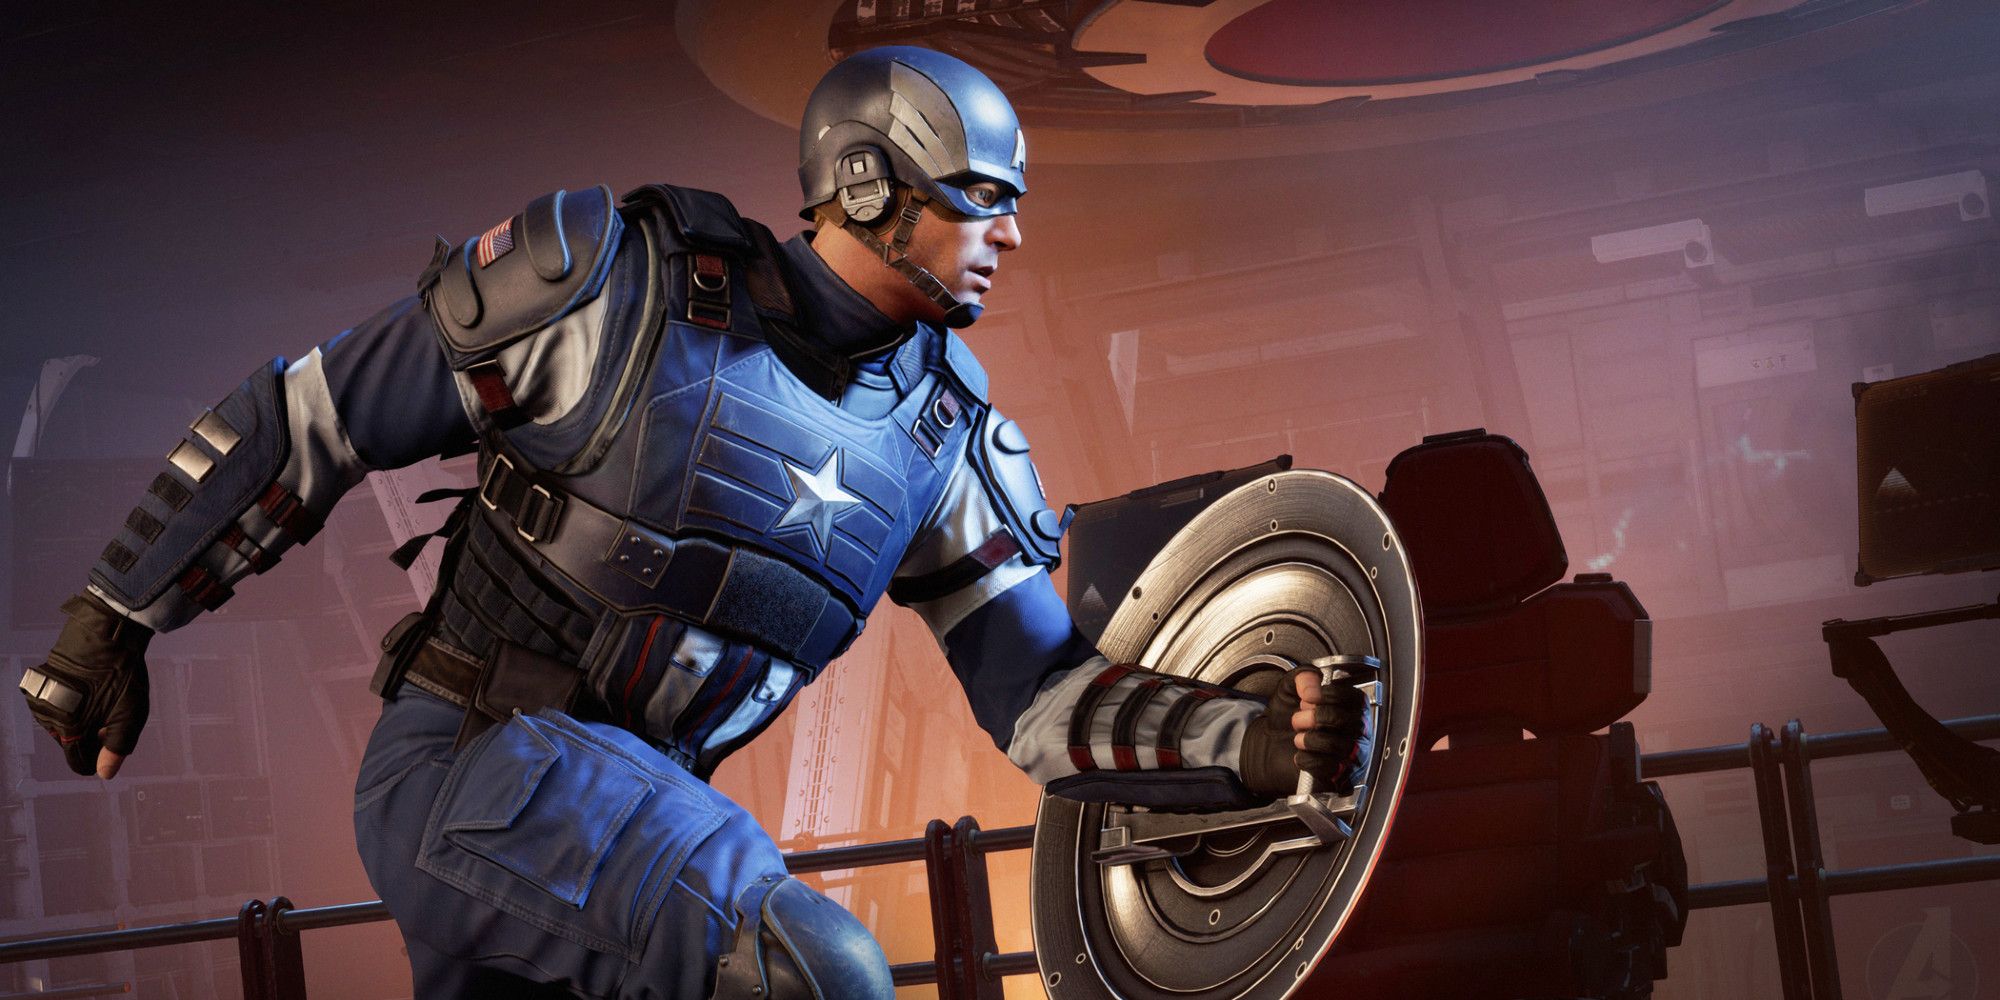 La actualización de Marvel's Avengers traerá de vuelta a Nick Fury y agregará nuevas misiones